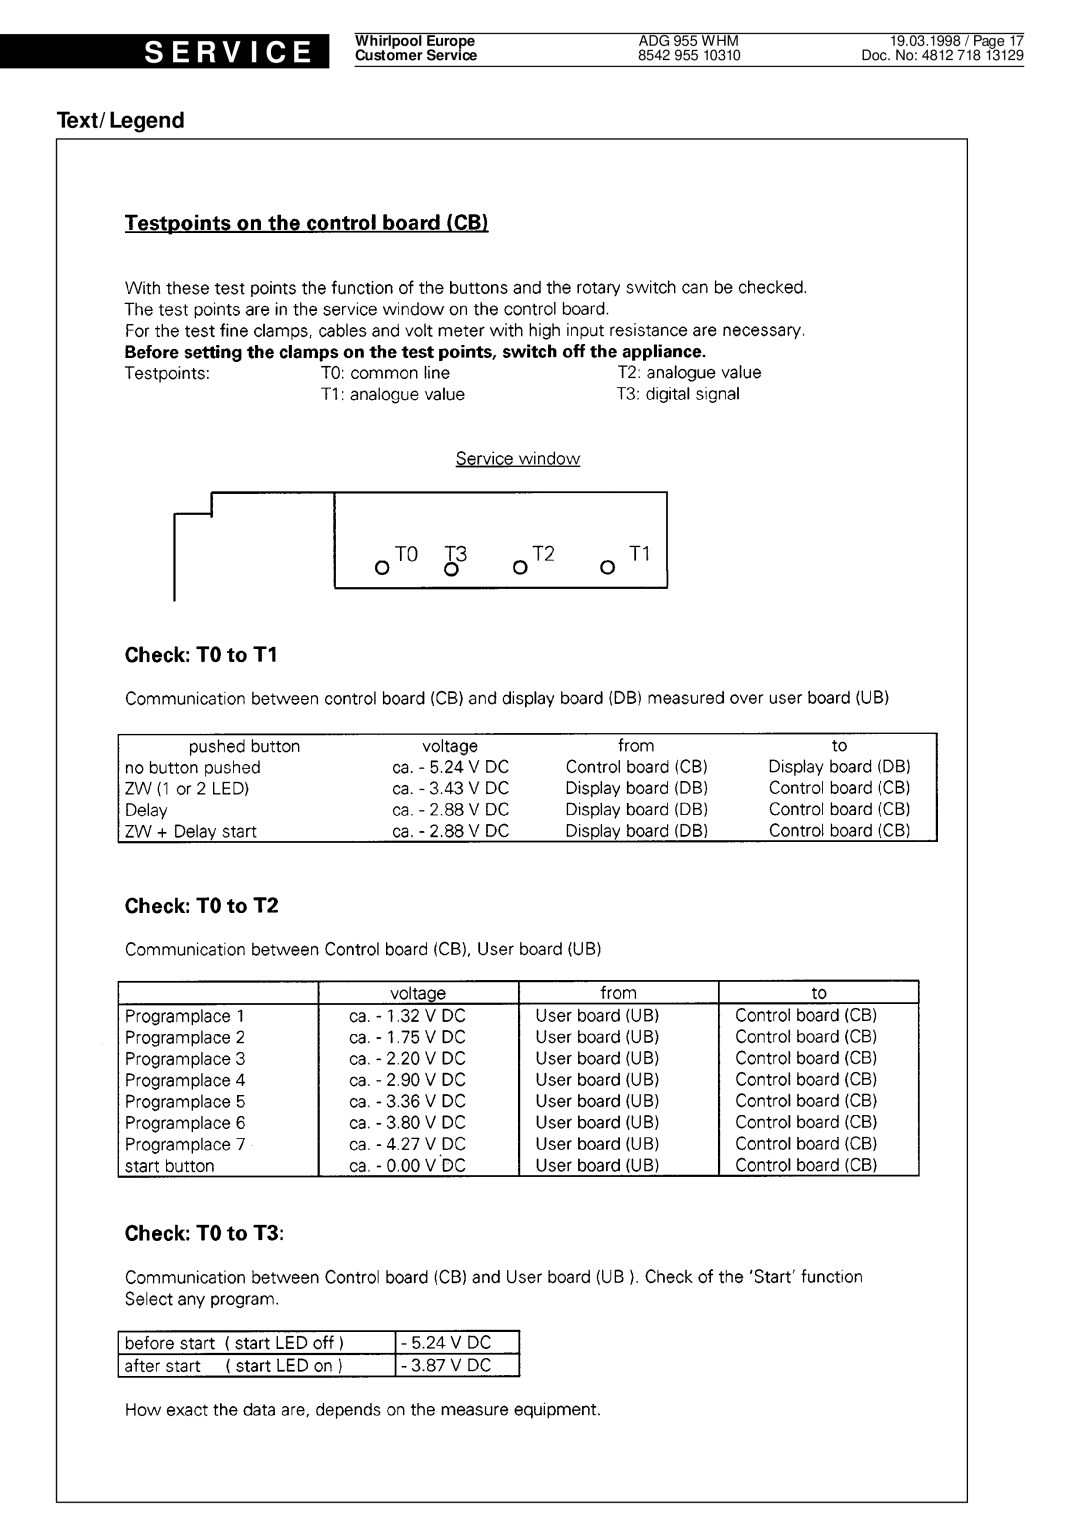 Whirlpool ADG 955 WHM service manual S E R V I C E, Text/Legend, 19.03.1998 / Page, Doc. No 